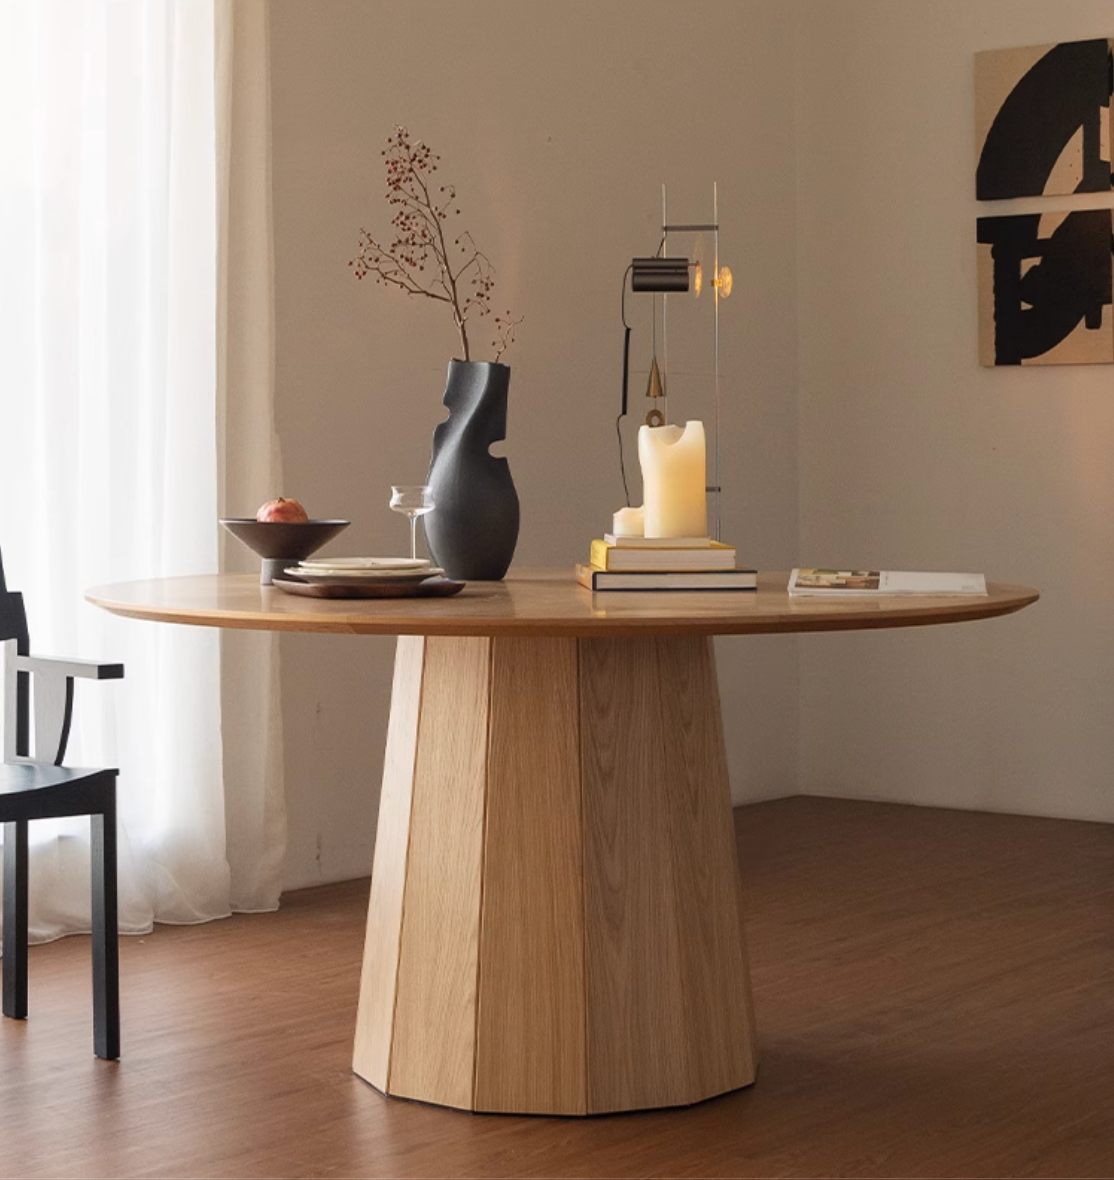 GATHERING ROUND TABLE  Ziinlife Modern Design Furniture Hong Kong  